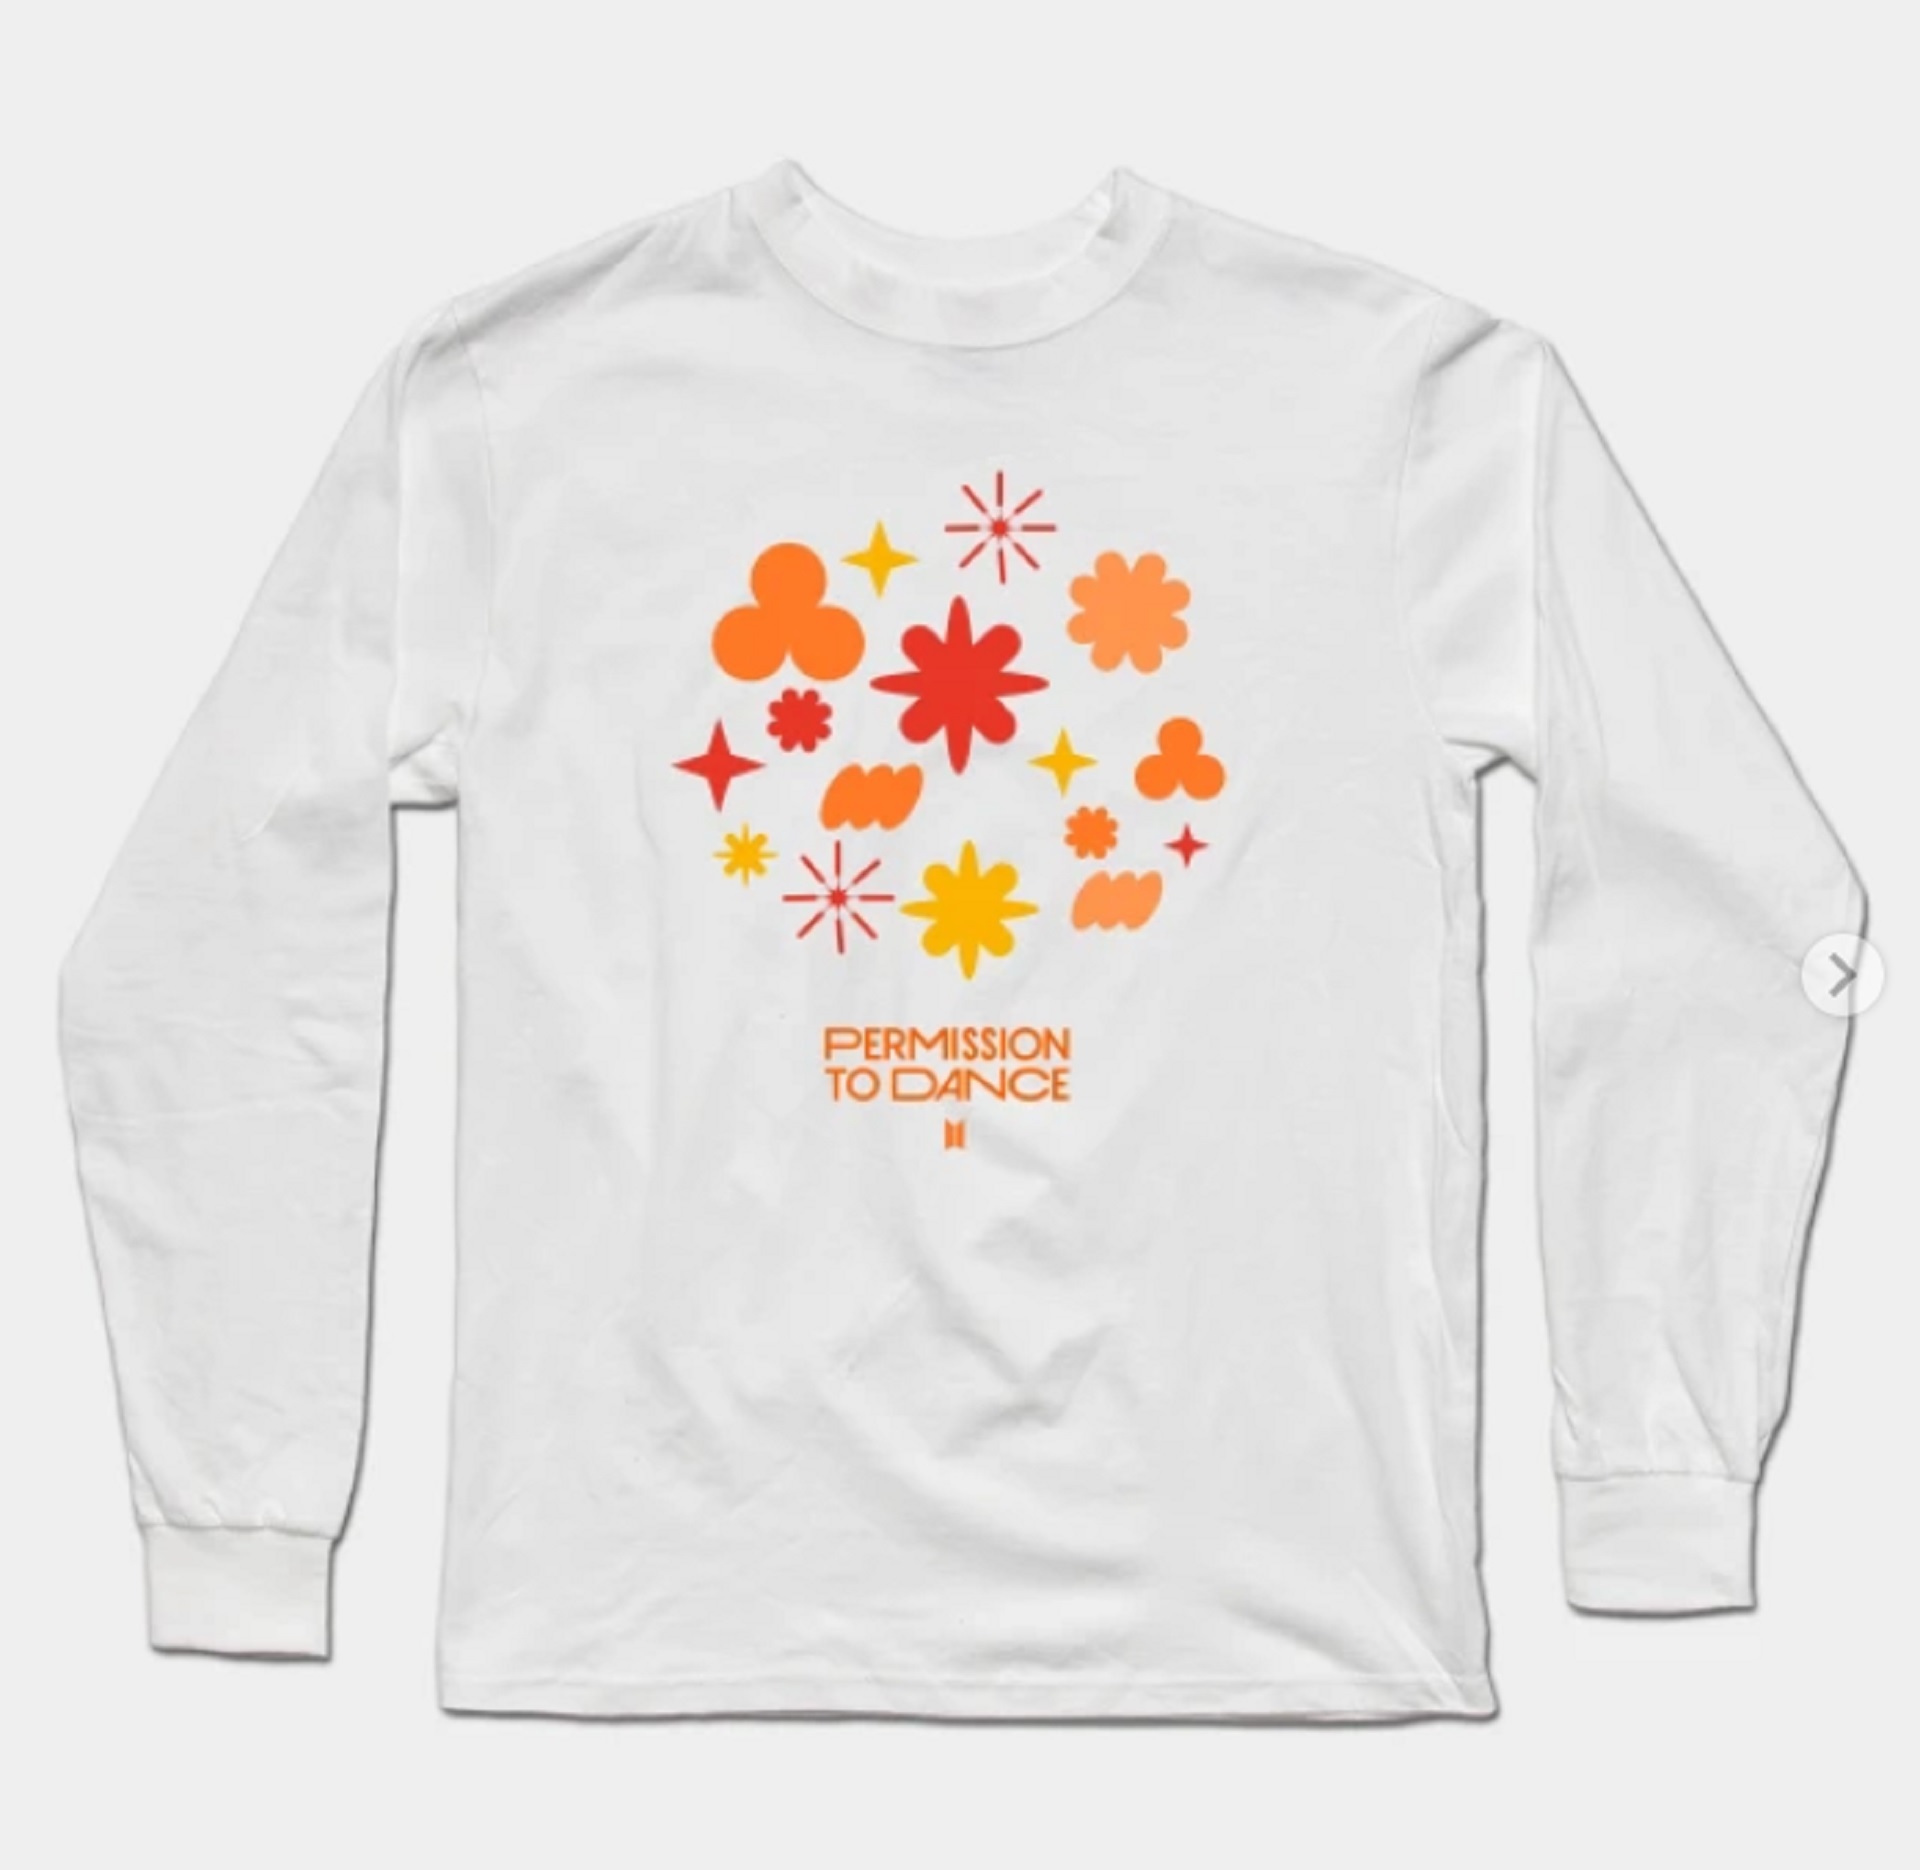 BTS Merchandise Collectibles PTD sweatshirt